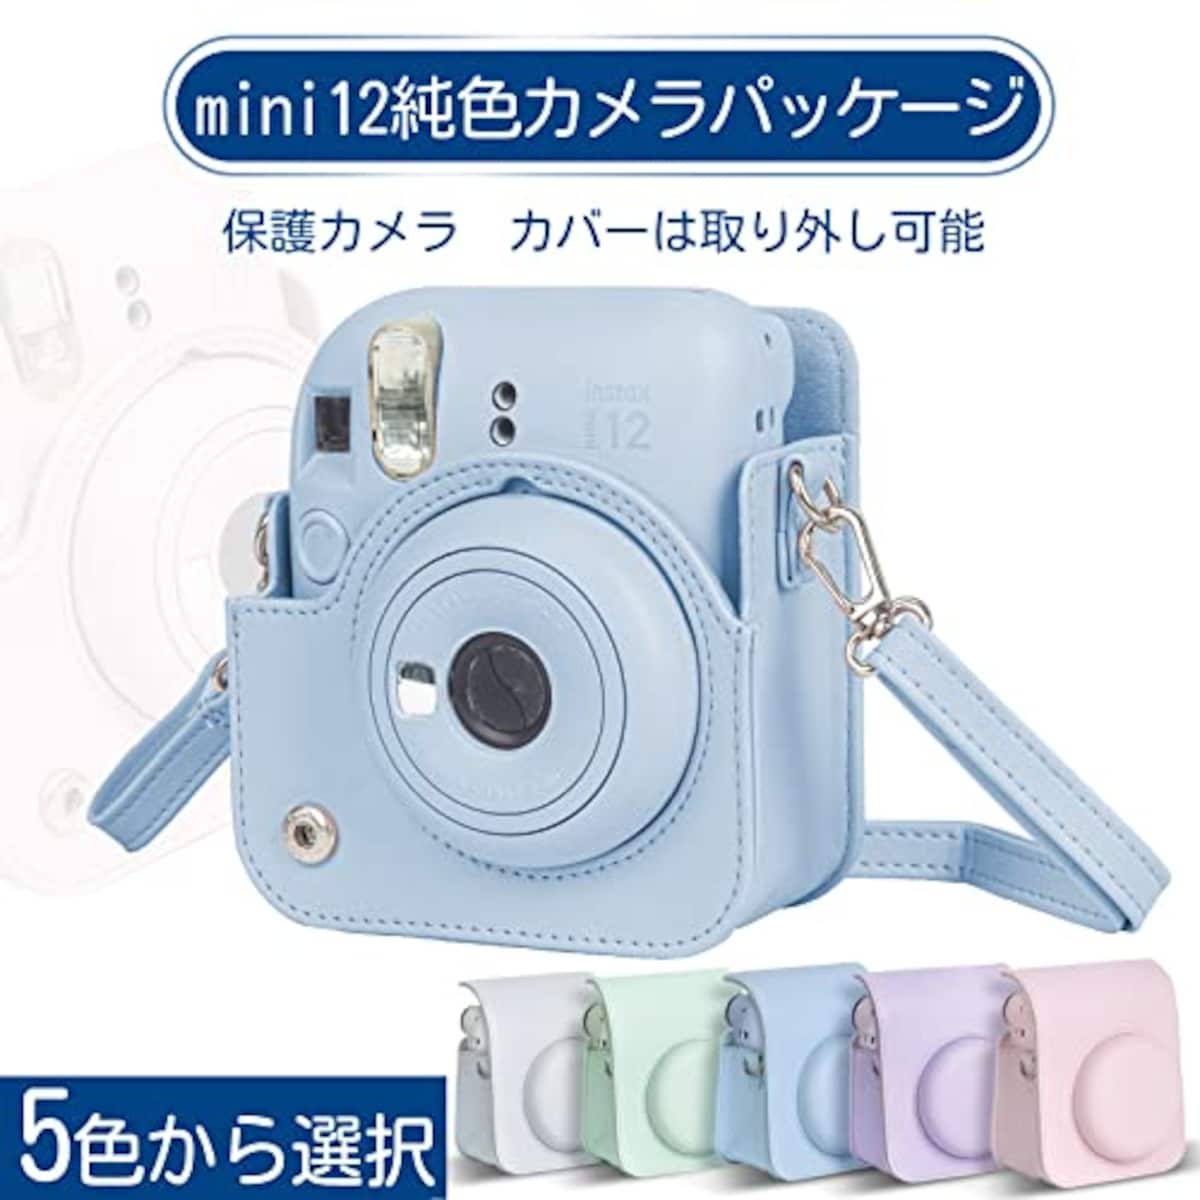  チェキケース instax mini 12用 カメラケース mini12 チェキ カバー Fujifilm チェキ ケース 新モデル 全面保護 傷つけ防止 携帯便利 ショルダーストラップ付き PUレザー (ブルー)画像4 